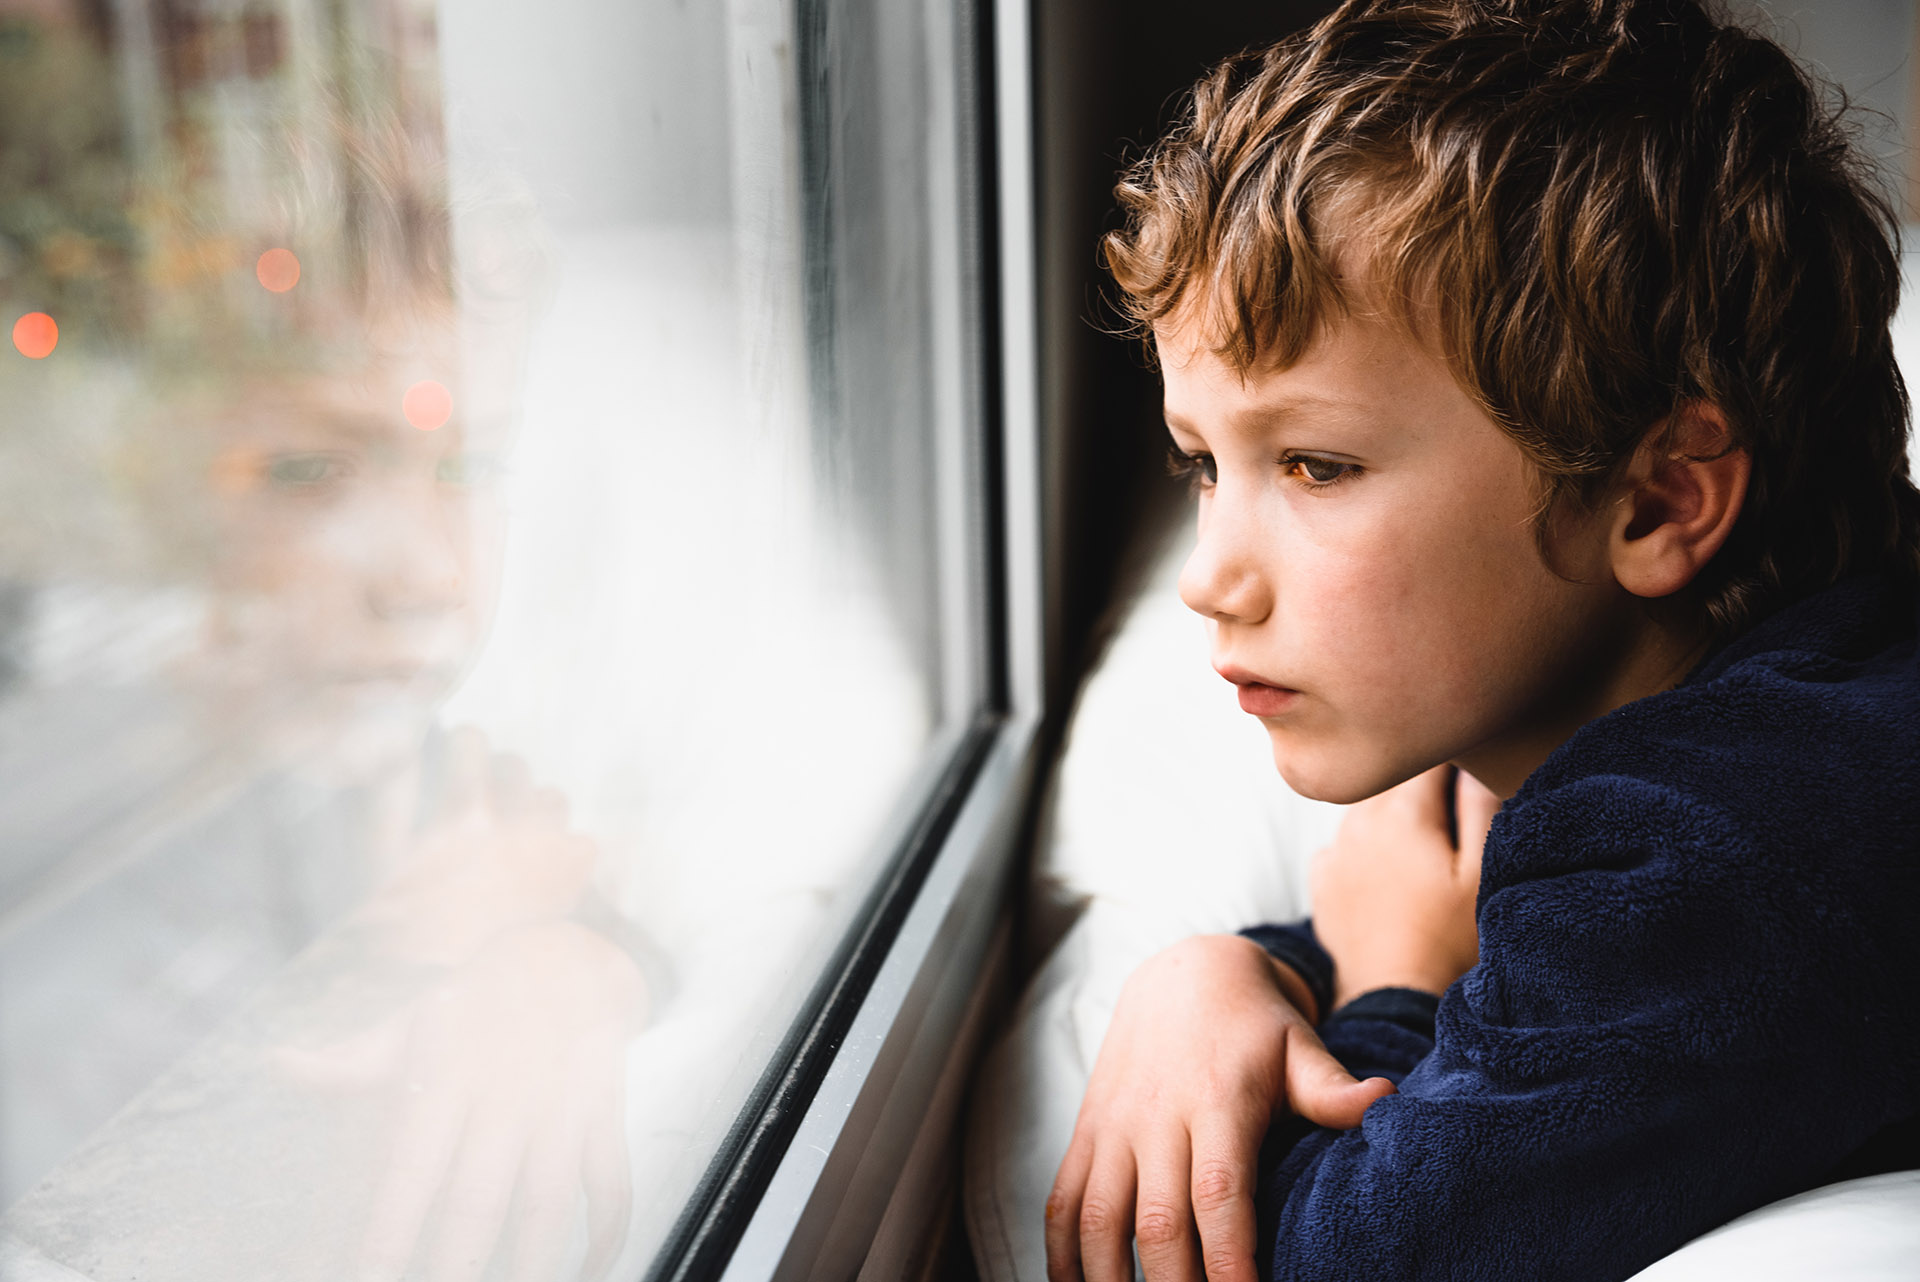 Ya un estudio publicado en mayo en la revista científica JAMA daba cuenta de la causa por la que los niños representan menos del 2% de los casos de COVID-19 (Shutterstock)